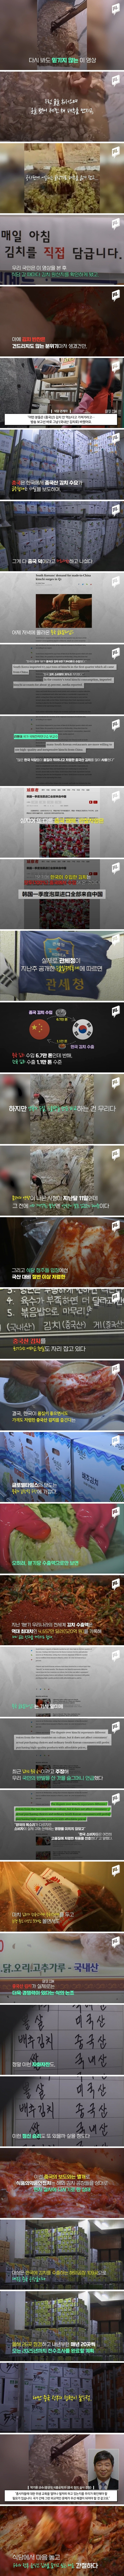 중국의 자화자찬.中관영매체 “고퀄 중국김치 즐기는 한국인”.jpg